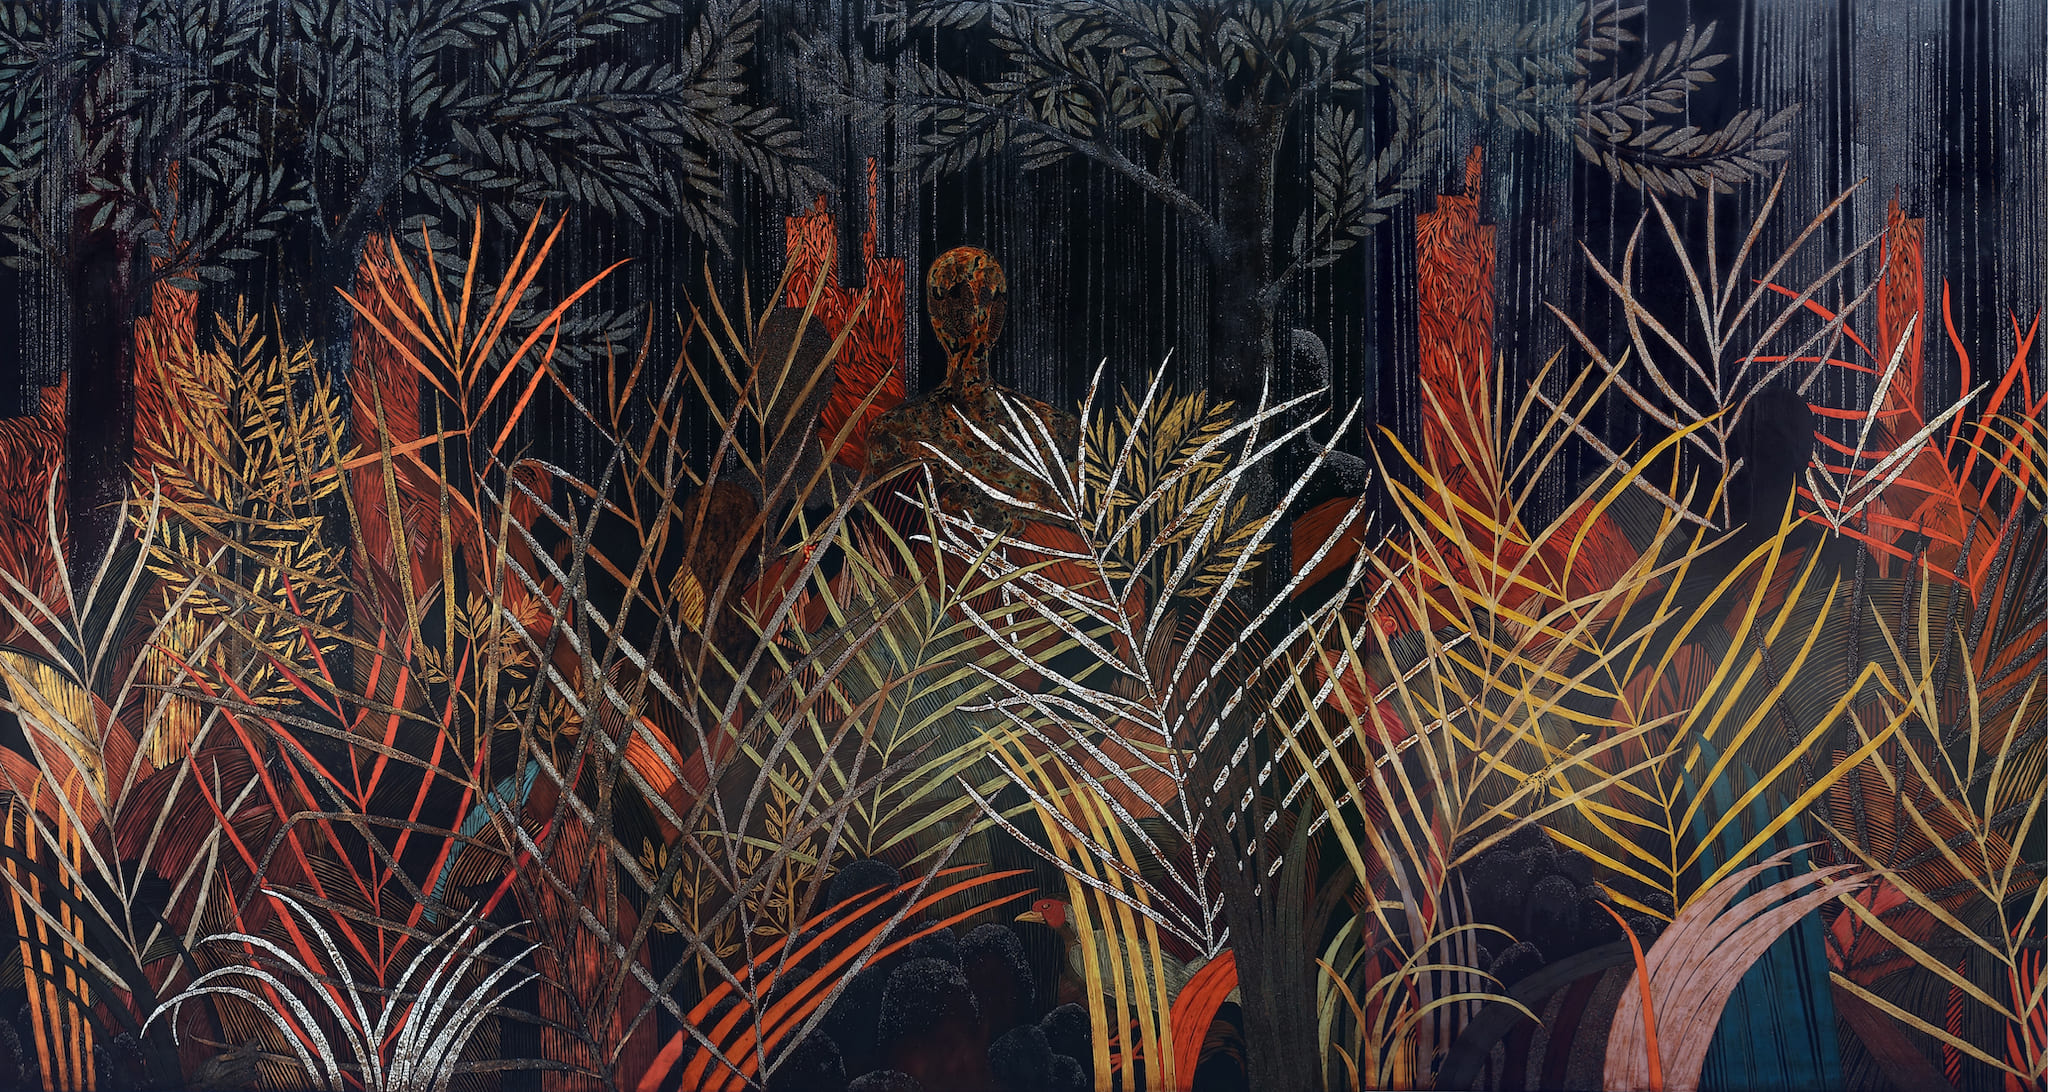 Tác phẩm Thân rừng (kích thước: 160x300cm) là bức tranh lớn nhất được Văn sáng tác năm 2019